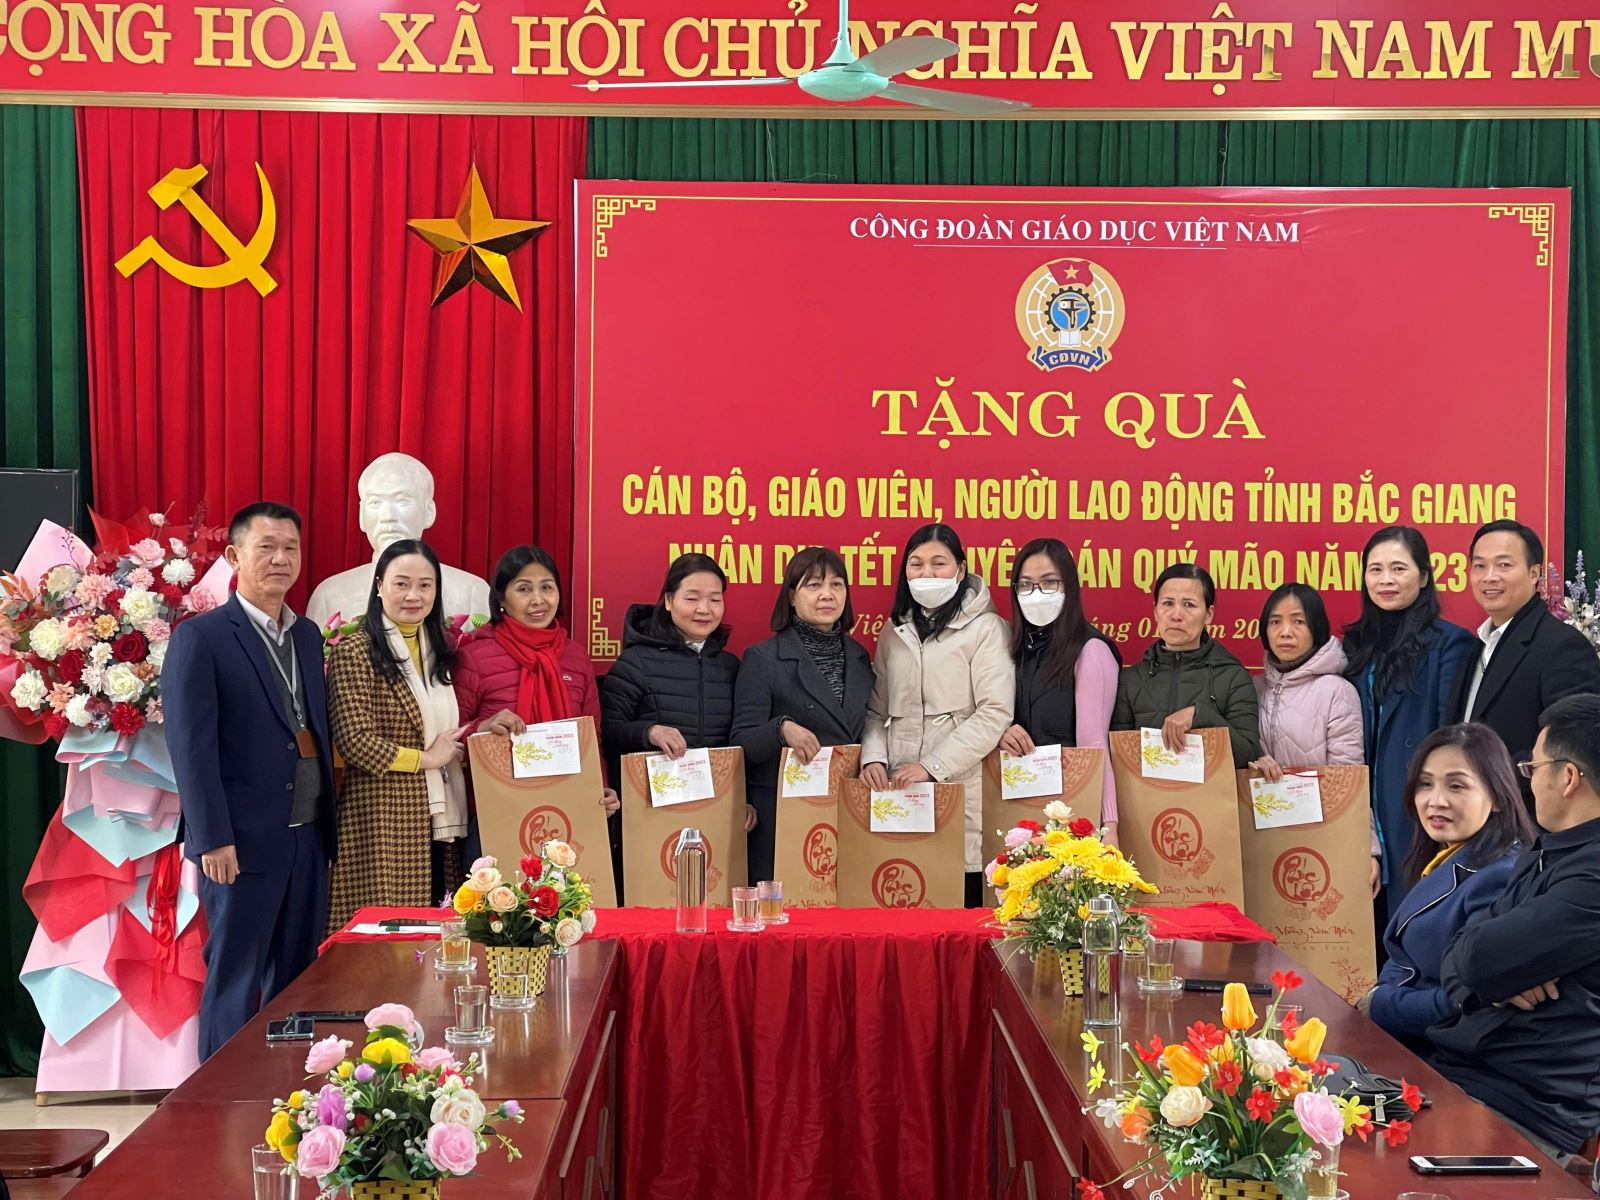 Công đoàn Giáo dục Việt Nam tổ chức thăm hỏi và tặng quà cho giáo viên tỉnh Bắc Giang